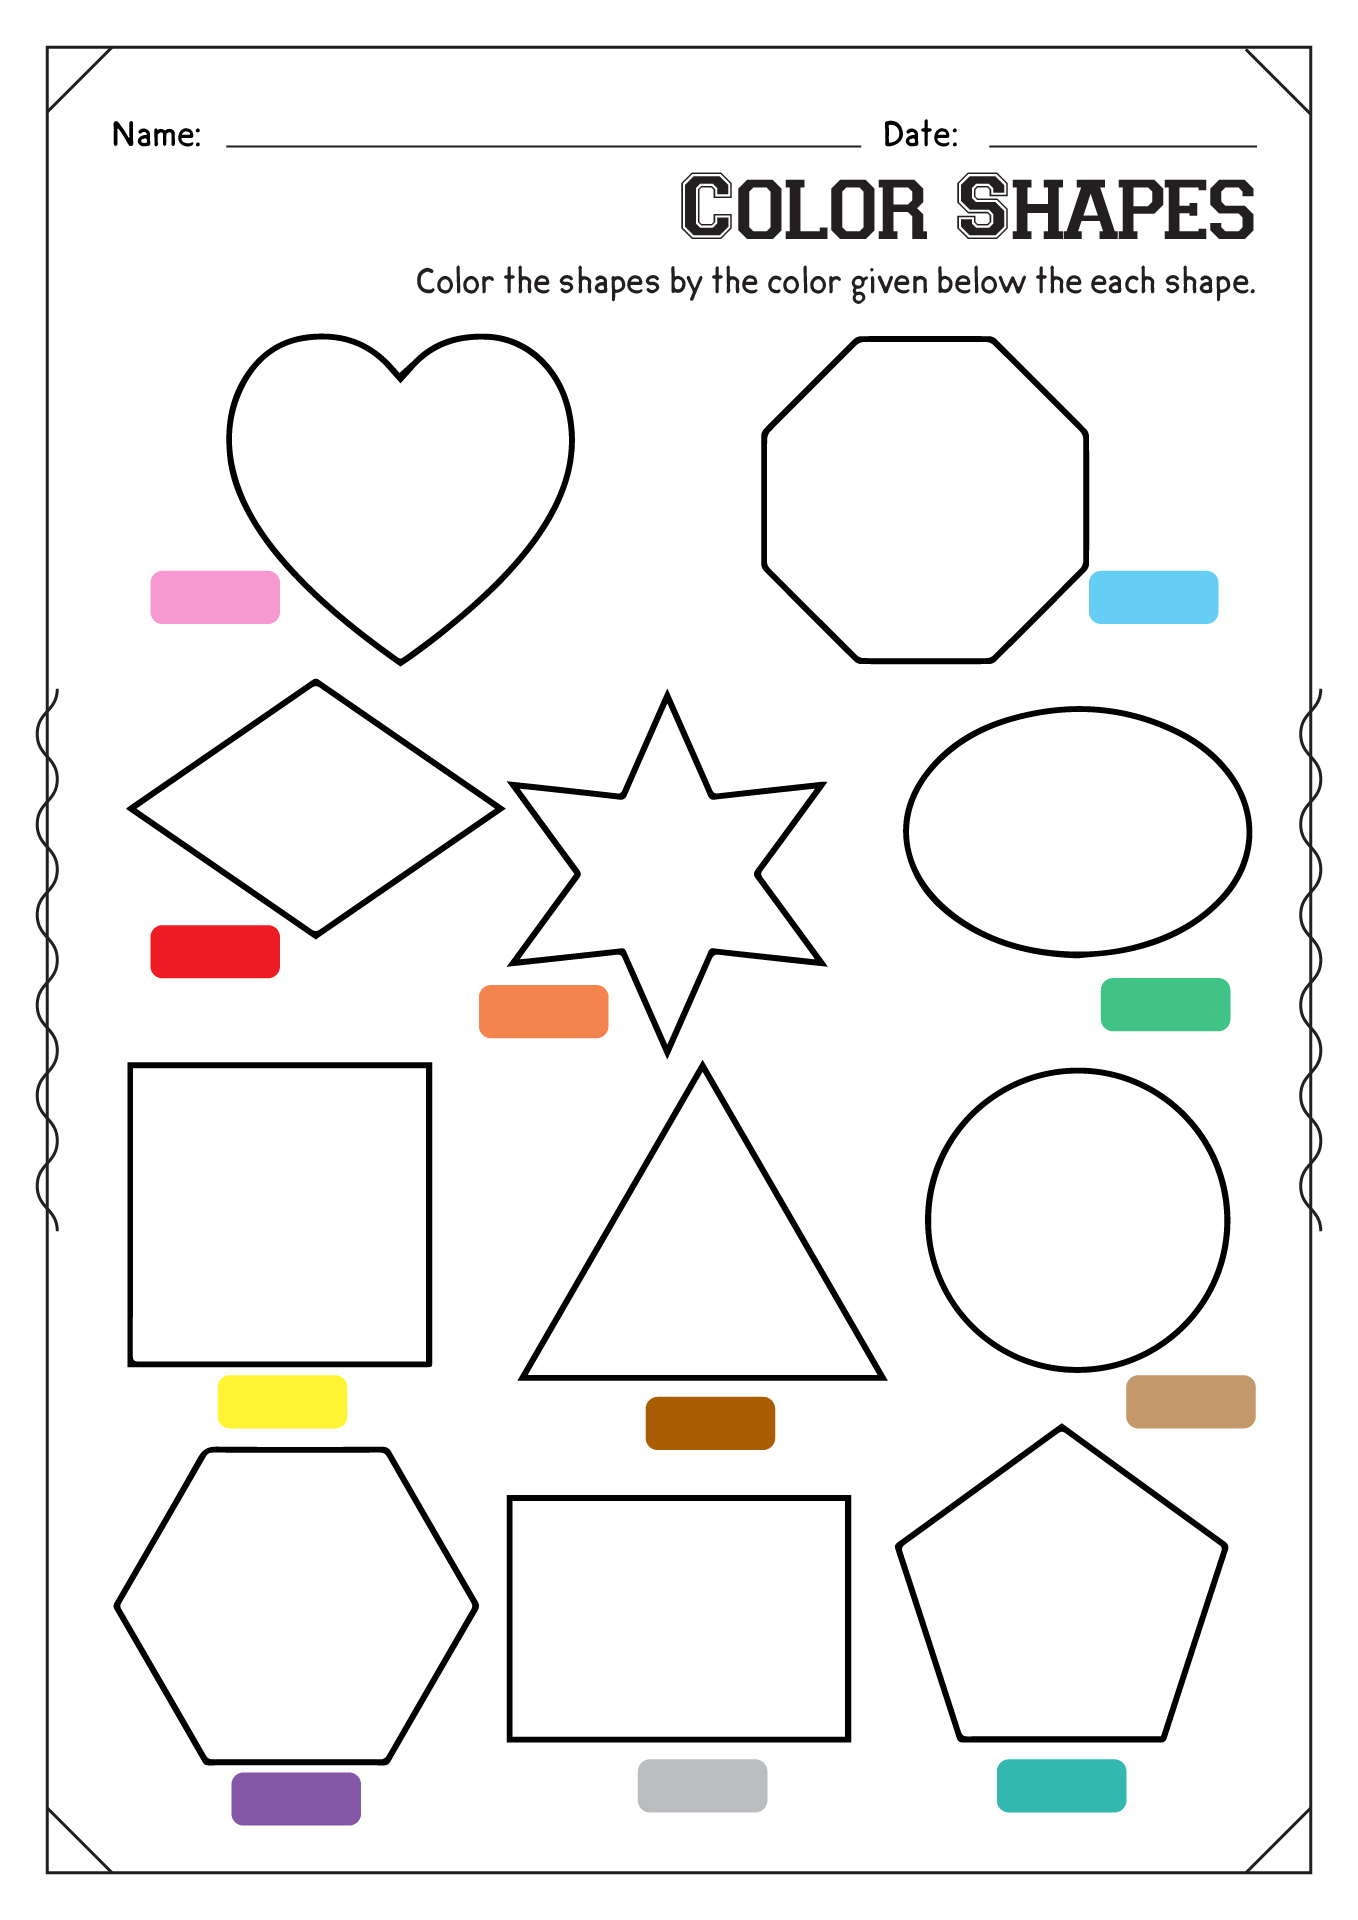 Color Shapes Worksheets Image